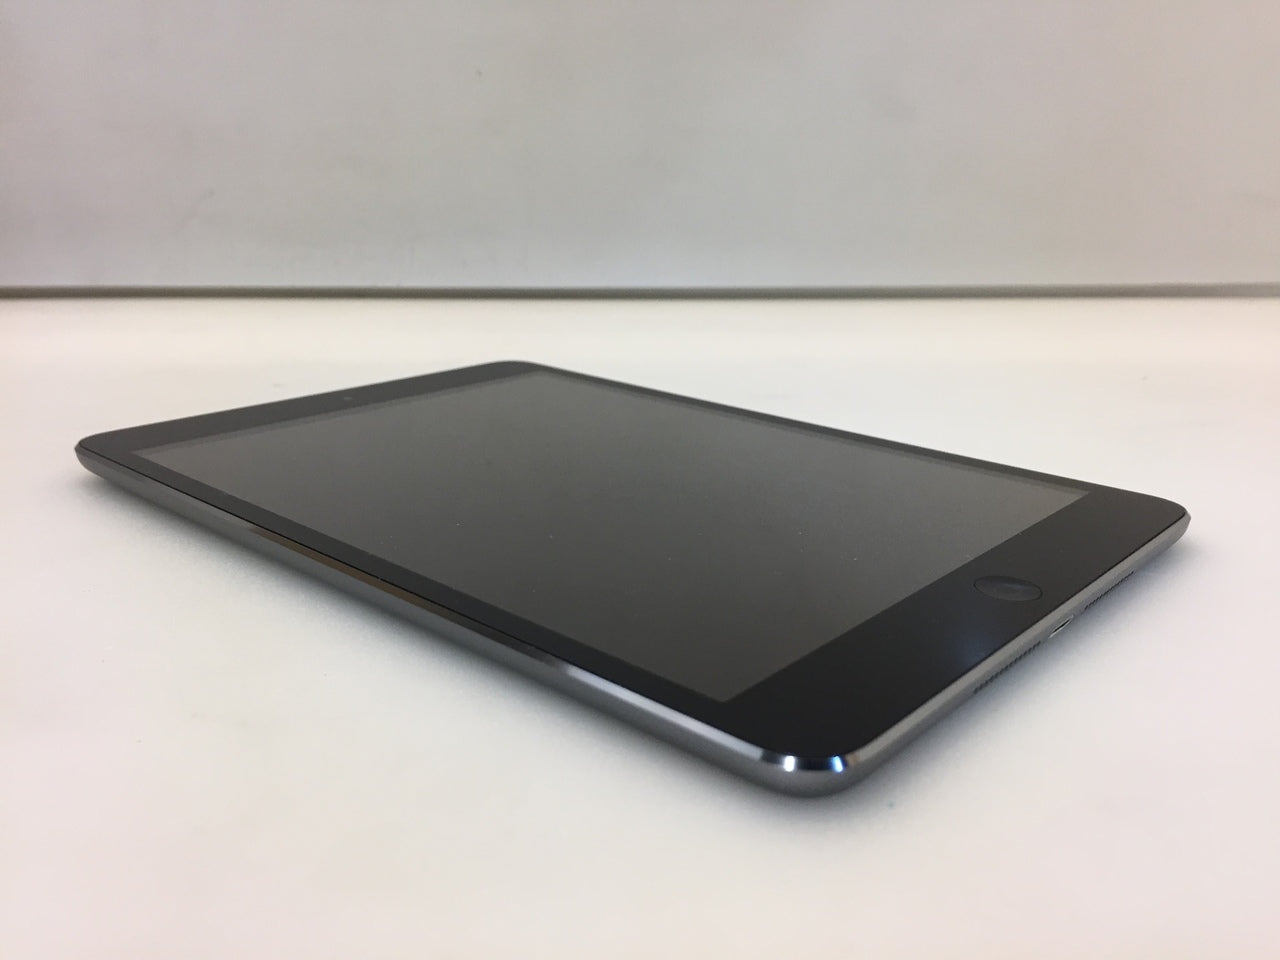 Apple iPad mini 1st Gen. 16GB, Wi-Fi, 7.9in - Space Gray MF432LL/A